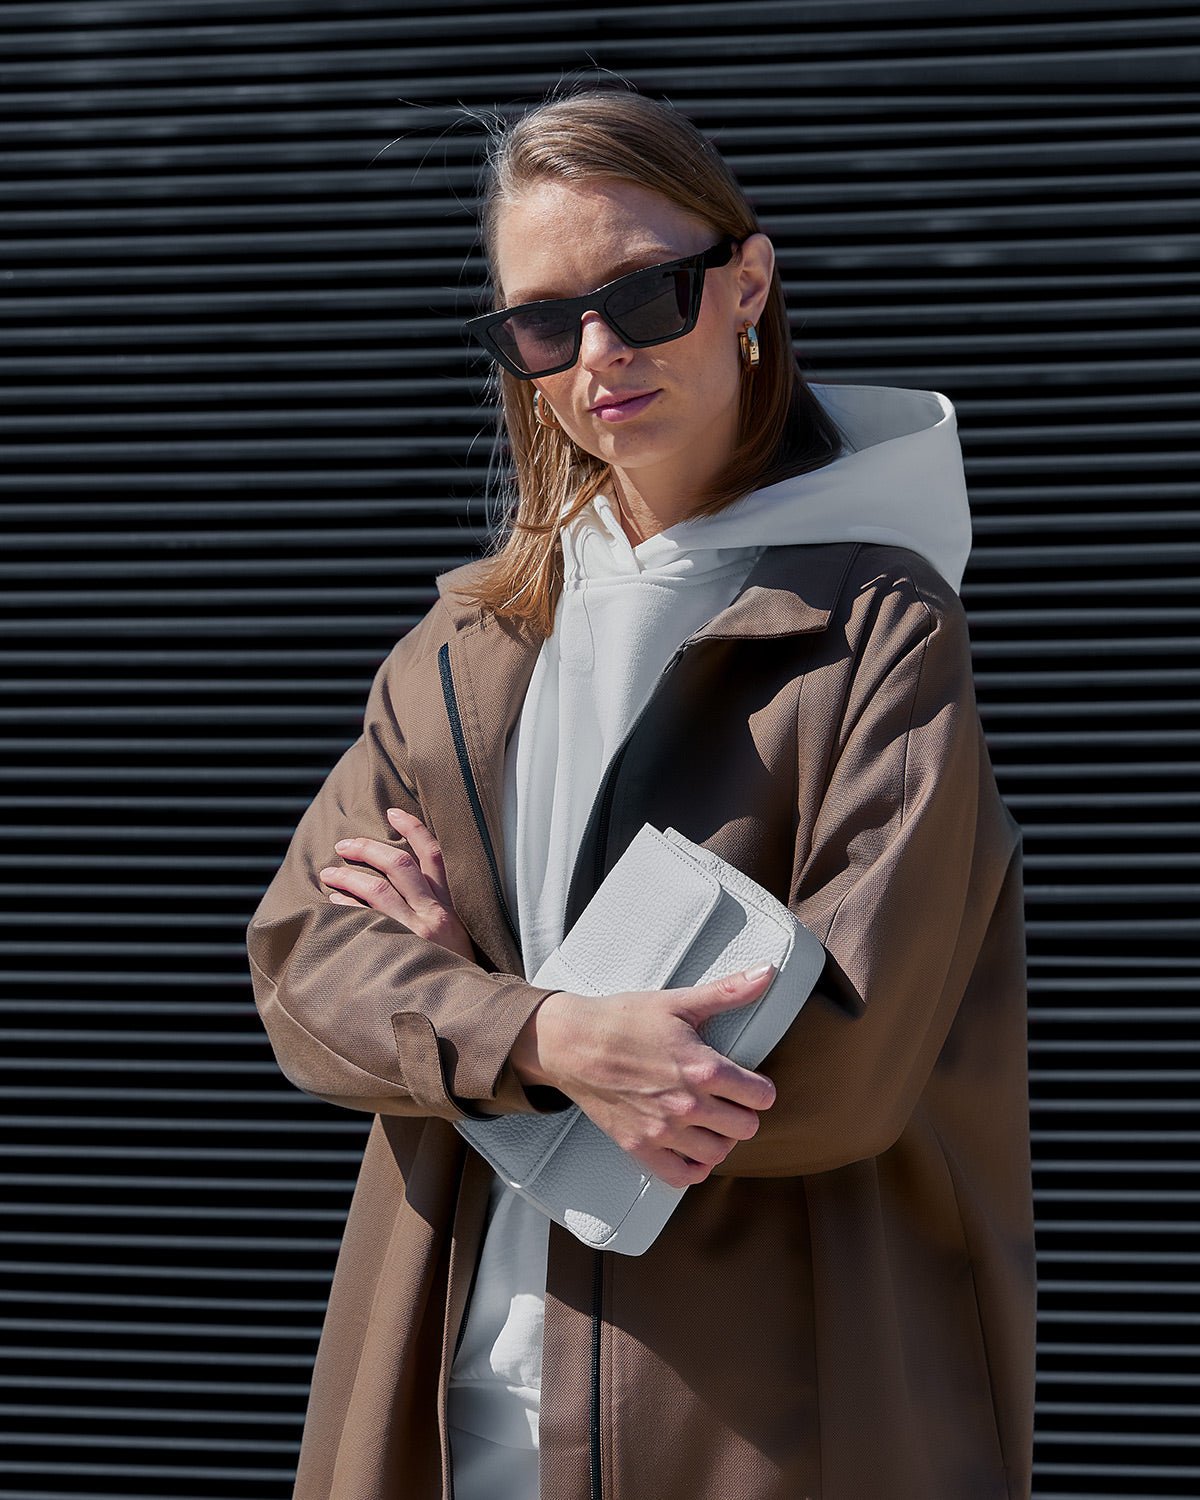 Water-resistant standing collar coat – Mila.Vert